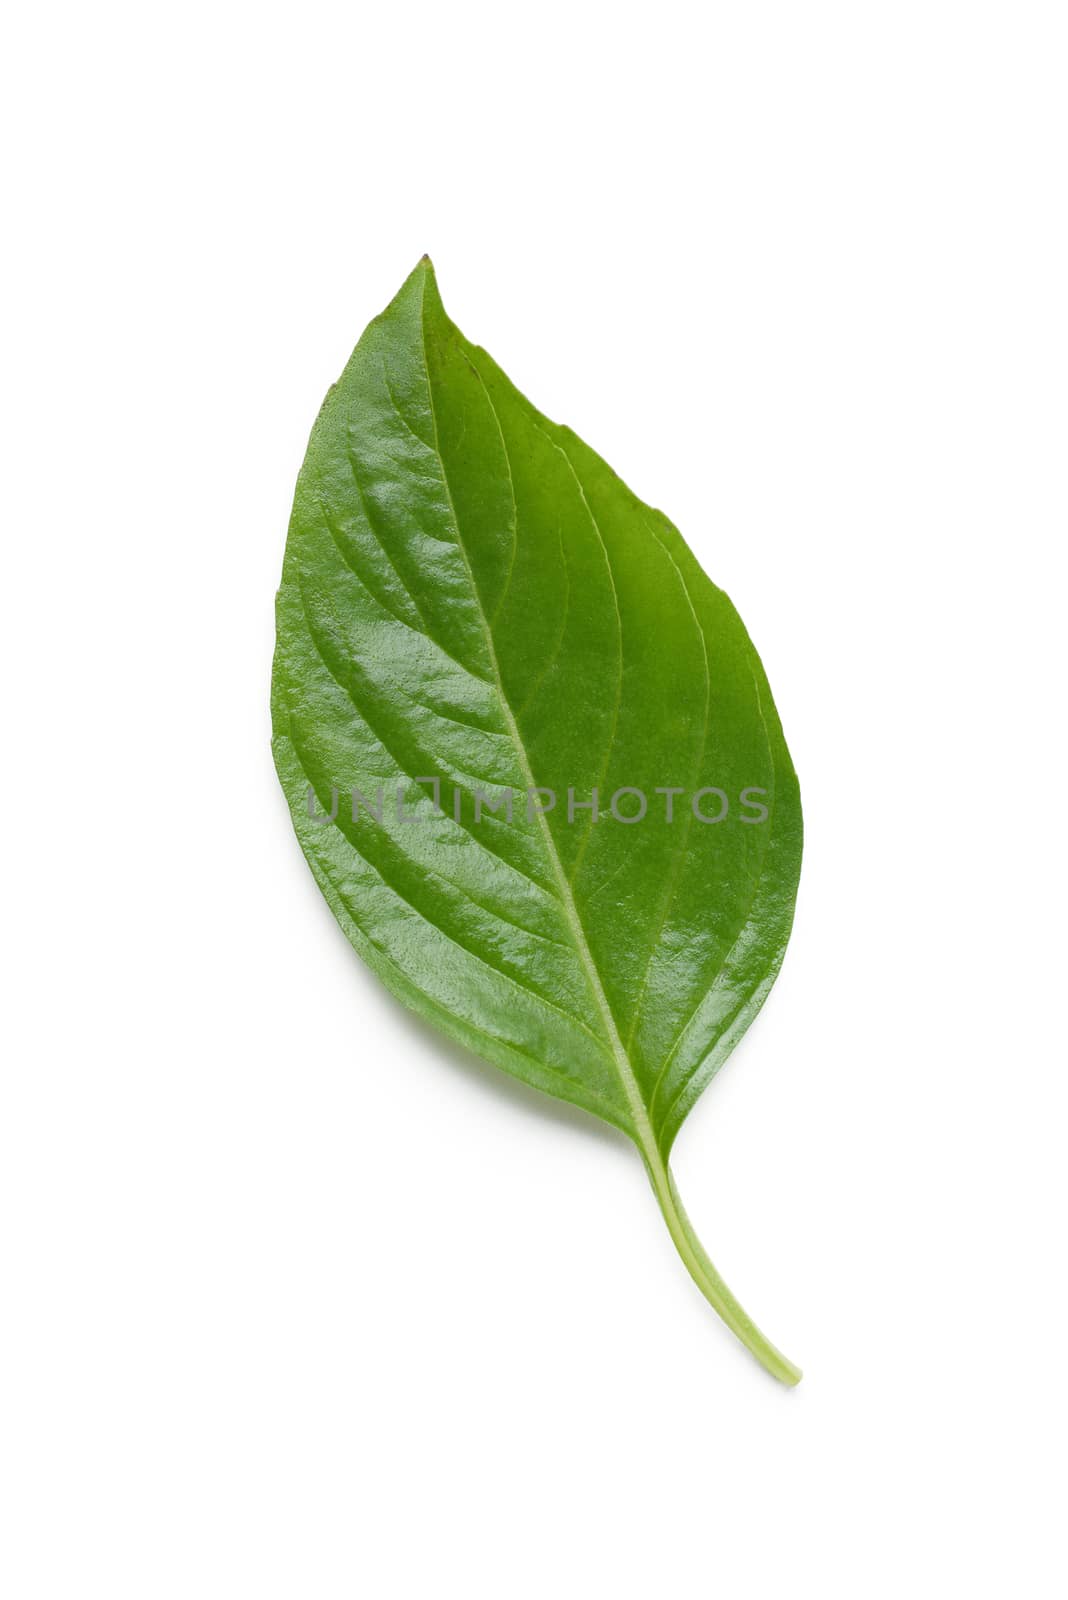 basil leaf isolated on white